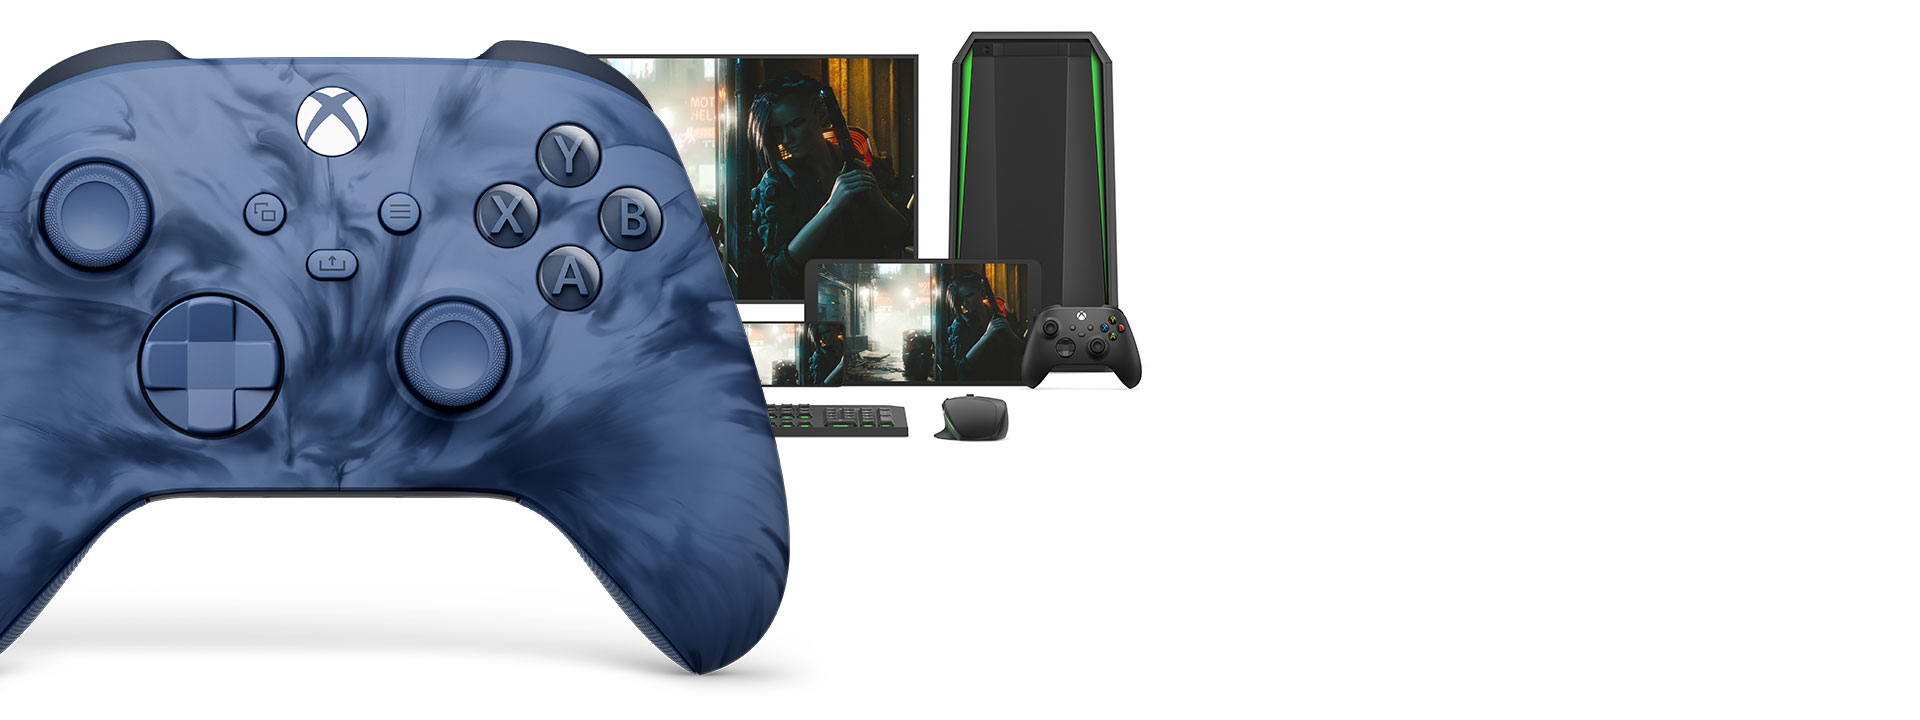 Vista frontal del lado derecho del Mando inalámbrico Xbox: Stormcloud Vapor Special Edition con distintas plataformas de juego detrás de él.